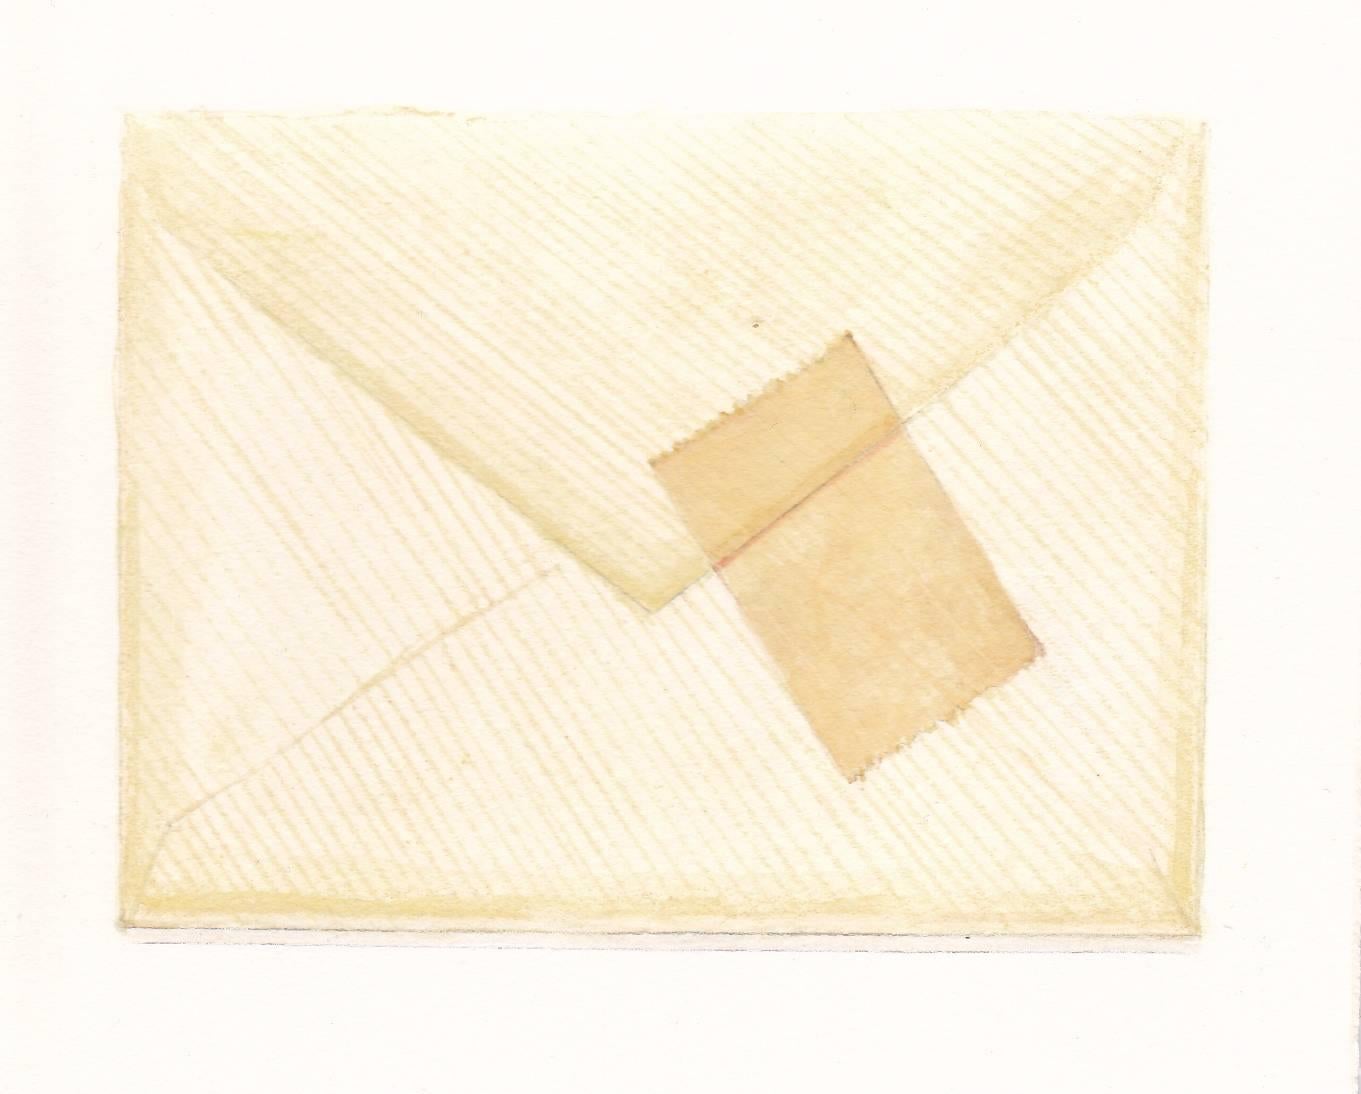 Envelope mit Wandteppich, realistisches Aquarell- und Bleistiftstillleben, 2016